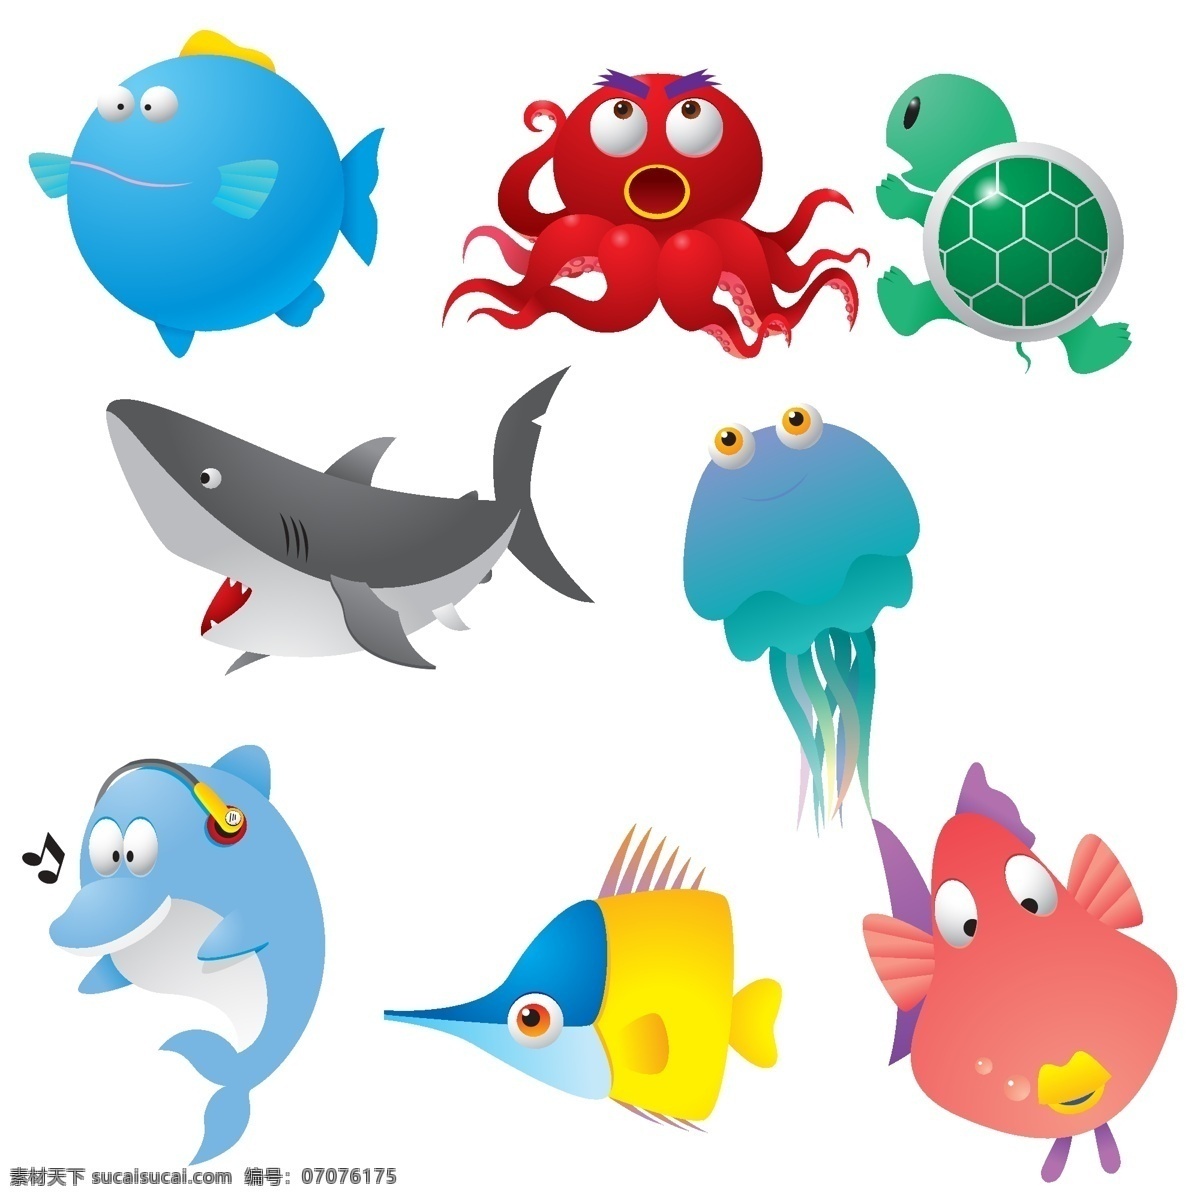 海洋生物 鲨鱼 小鱼 小乌龟 动物 动物世界 生物世界 矢量设计 矢量